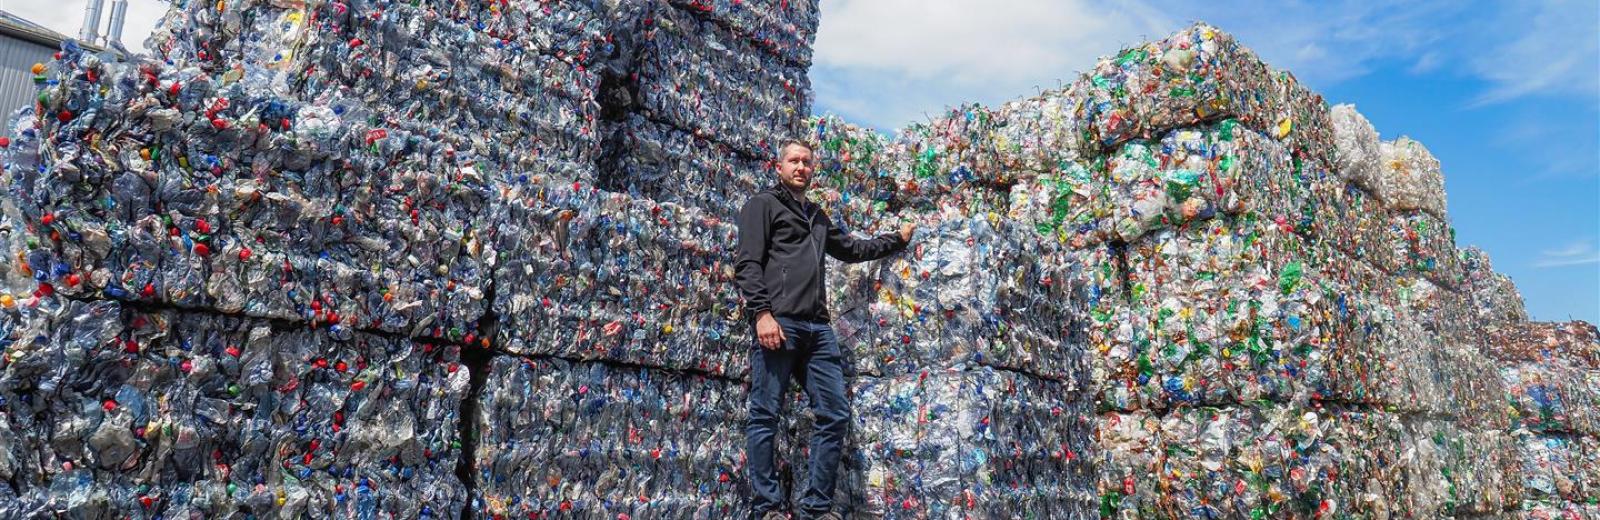 Cada día, Müller Recycling recicla 90 toneladas de botellas. © Müller Recycling AG